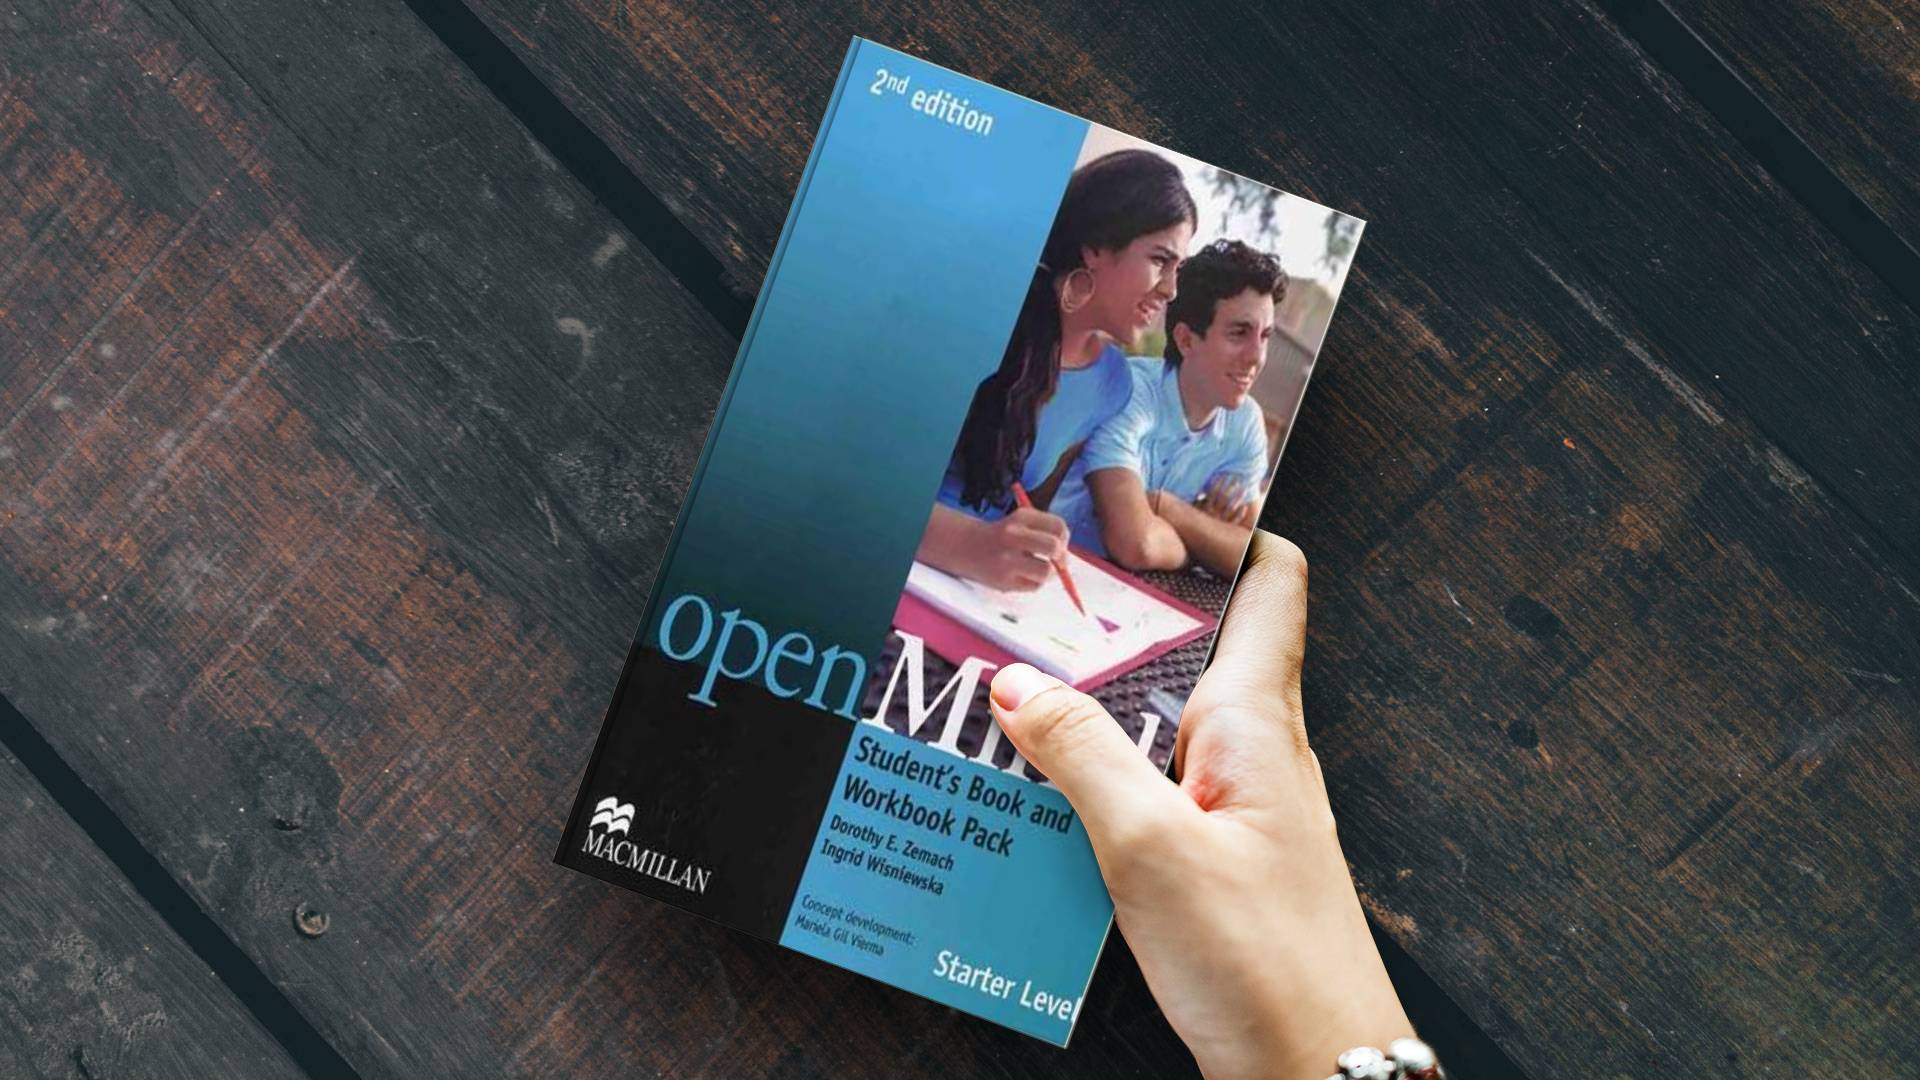 خرید کتاب زبان | کتاب زبان اصلی | openMind 2nd Edition Starter Level | اوپن مایند ویرایش دوم لول استارتر